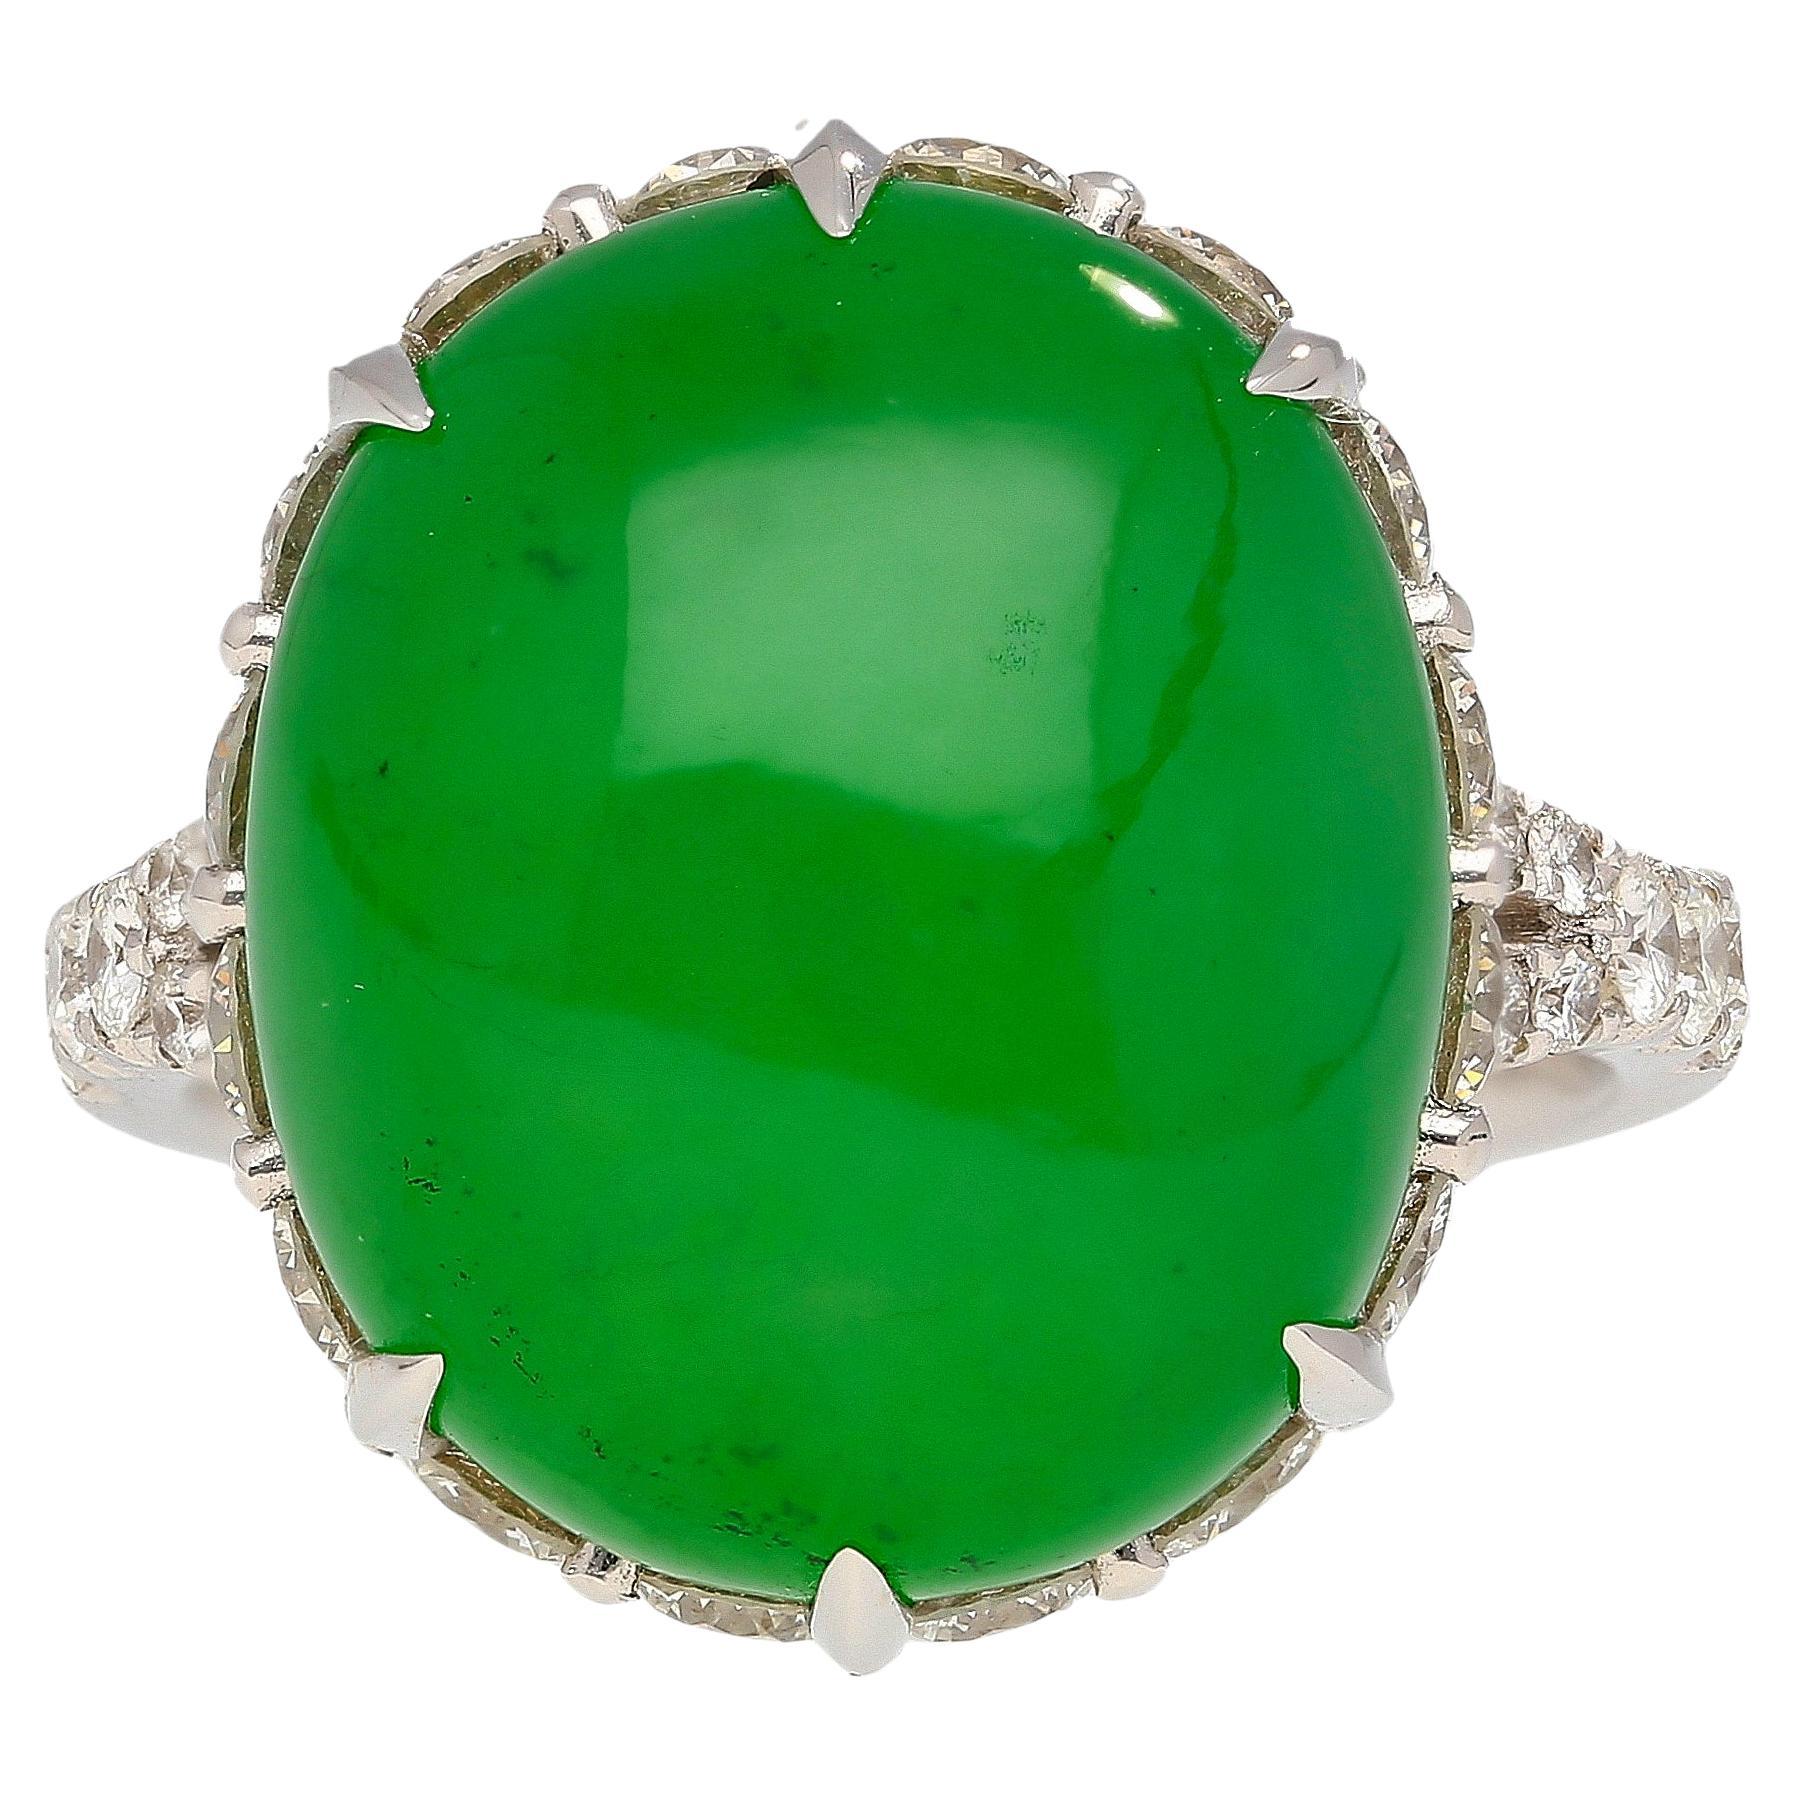 Ring aus Jadeit und Diamanten mit 17,86 Karat und einem Gewicht von 6,72 Gramm in 18 Karat Weißgold. Dieser Ring in Größe 7 (U.S.) zeigt eine Jade im Ovalschliff, die einen bezaubernden grünen Farbton hat.

Um die Jade herum sind 16 Diamanten im